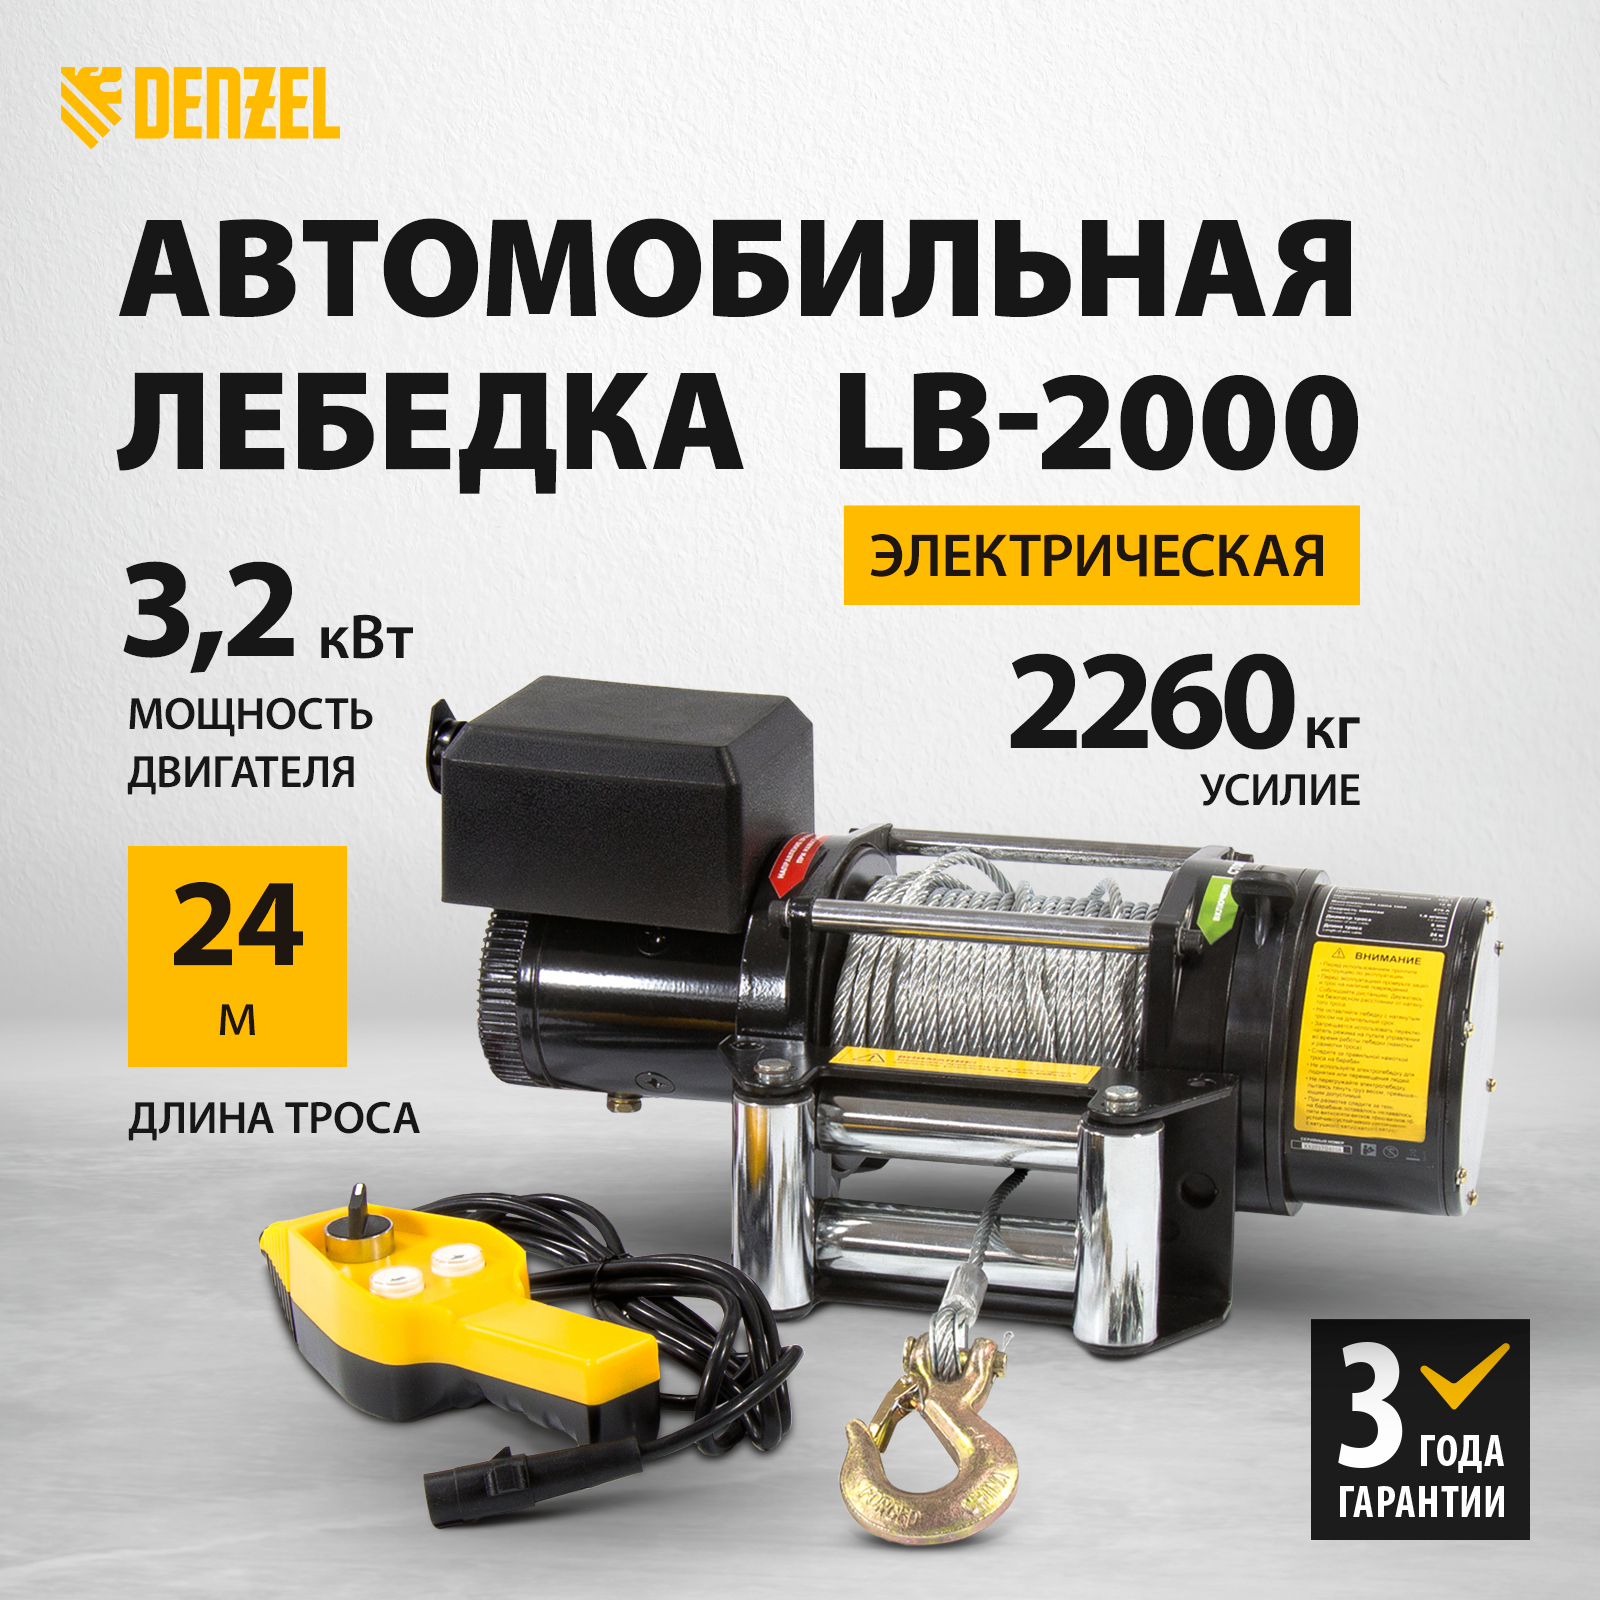 Лебедка автомобильная электрическая Denzel LB-2000, 2.2 т, 3.2 кВт, 52021